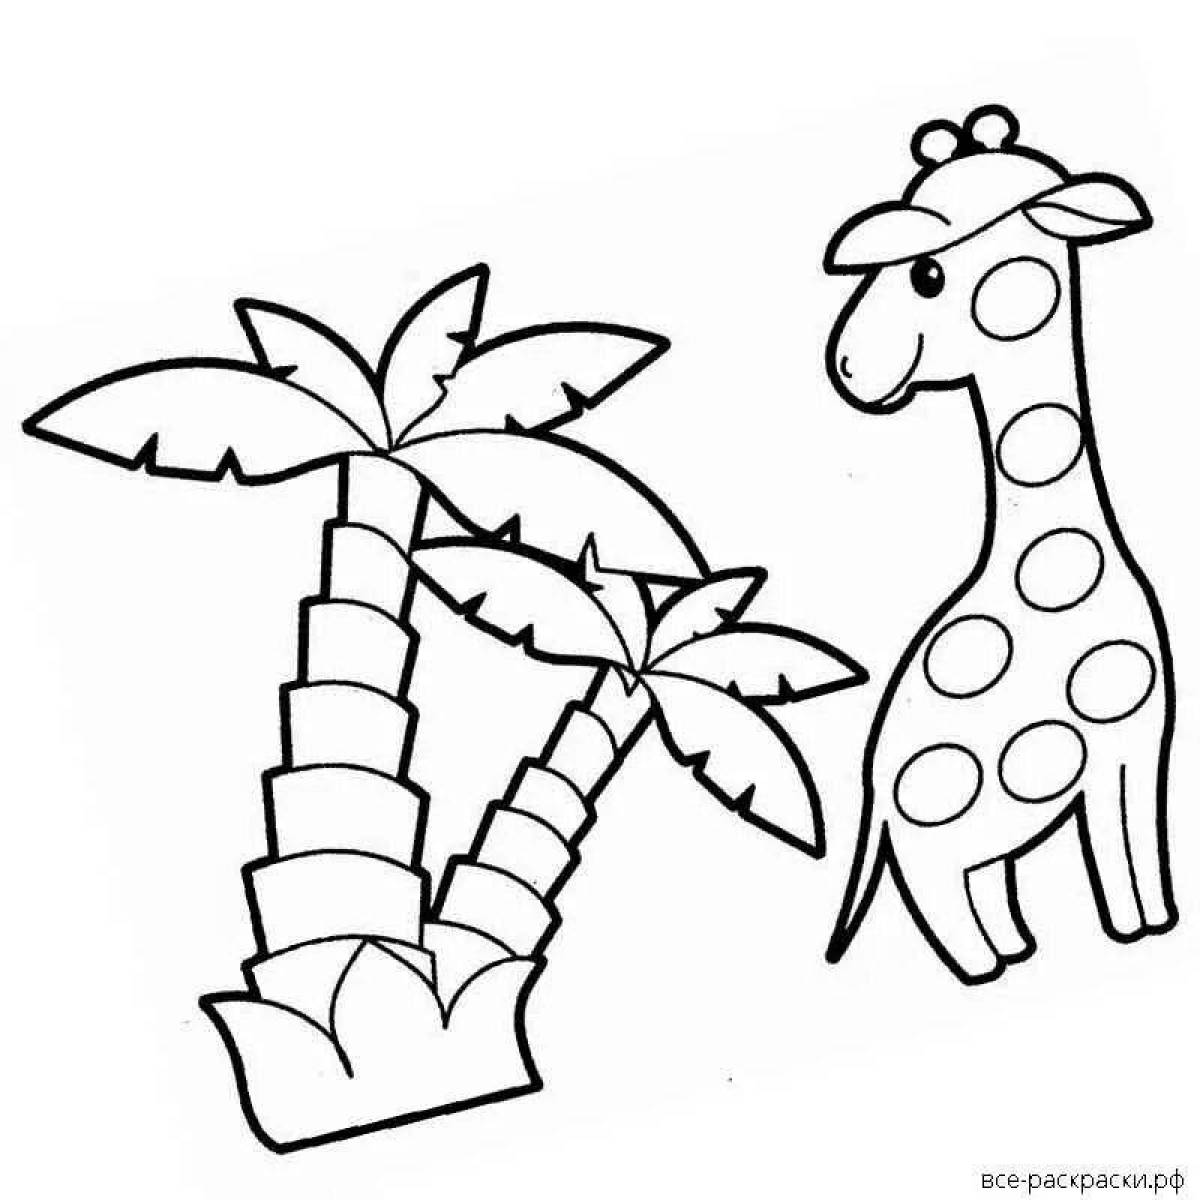 Буйная раскраска детеныш жирафа